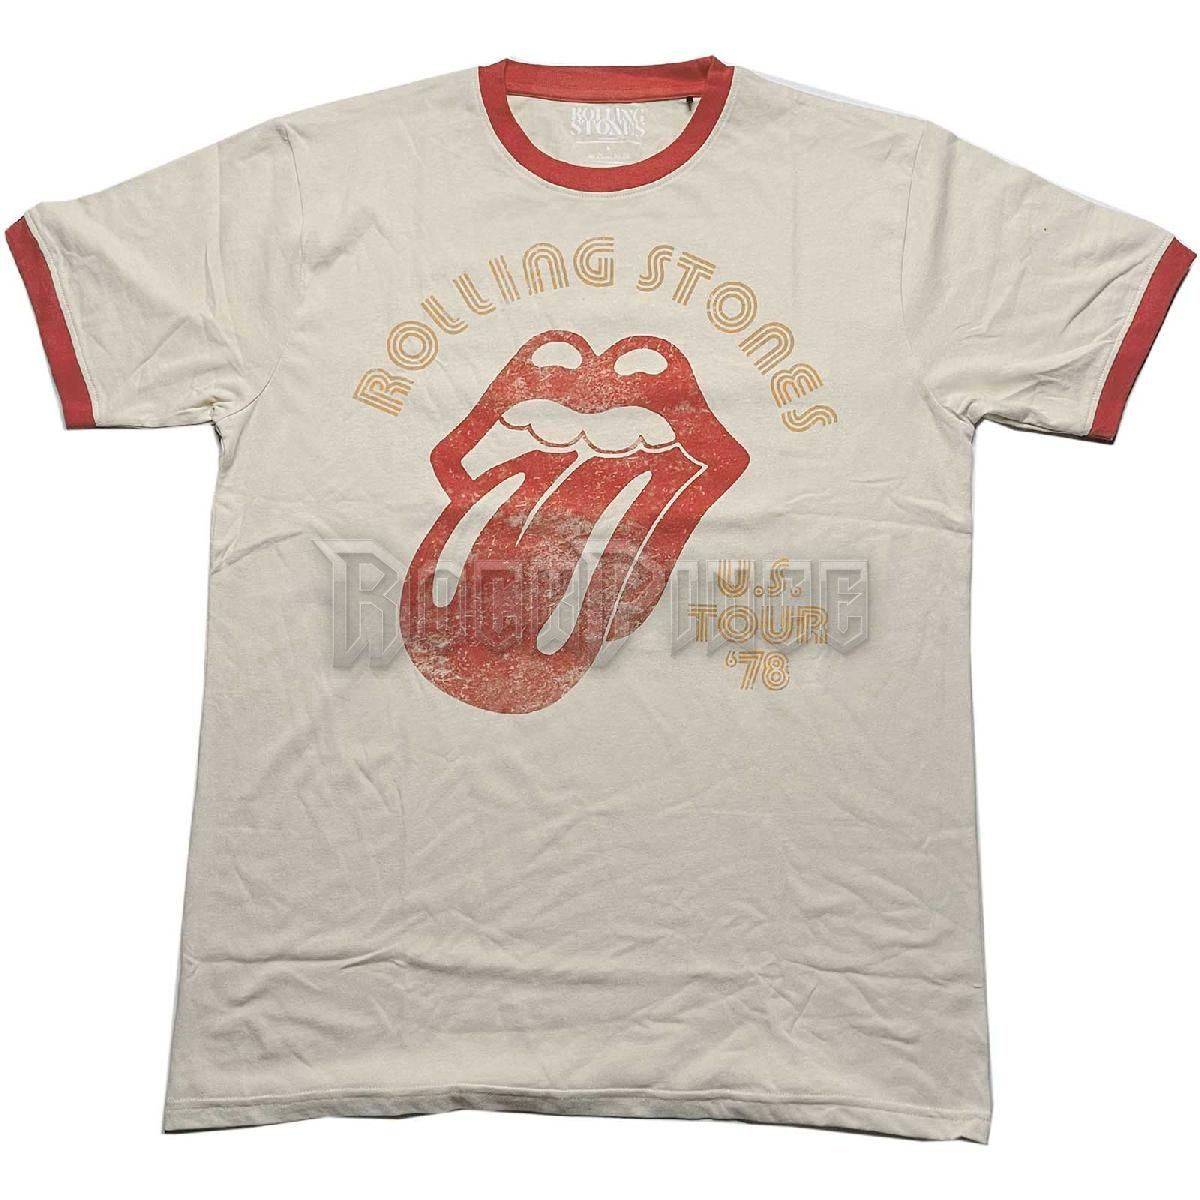 The Rolling Stones - US Tour '78 - unisex póló - RSTS203MNAT